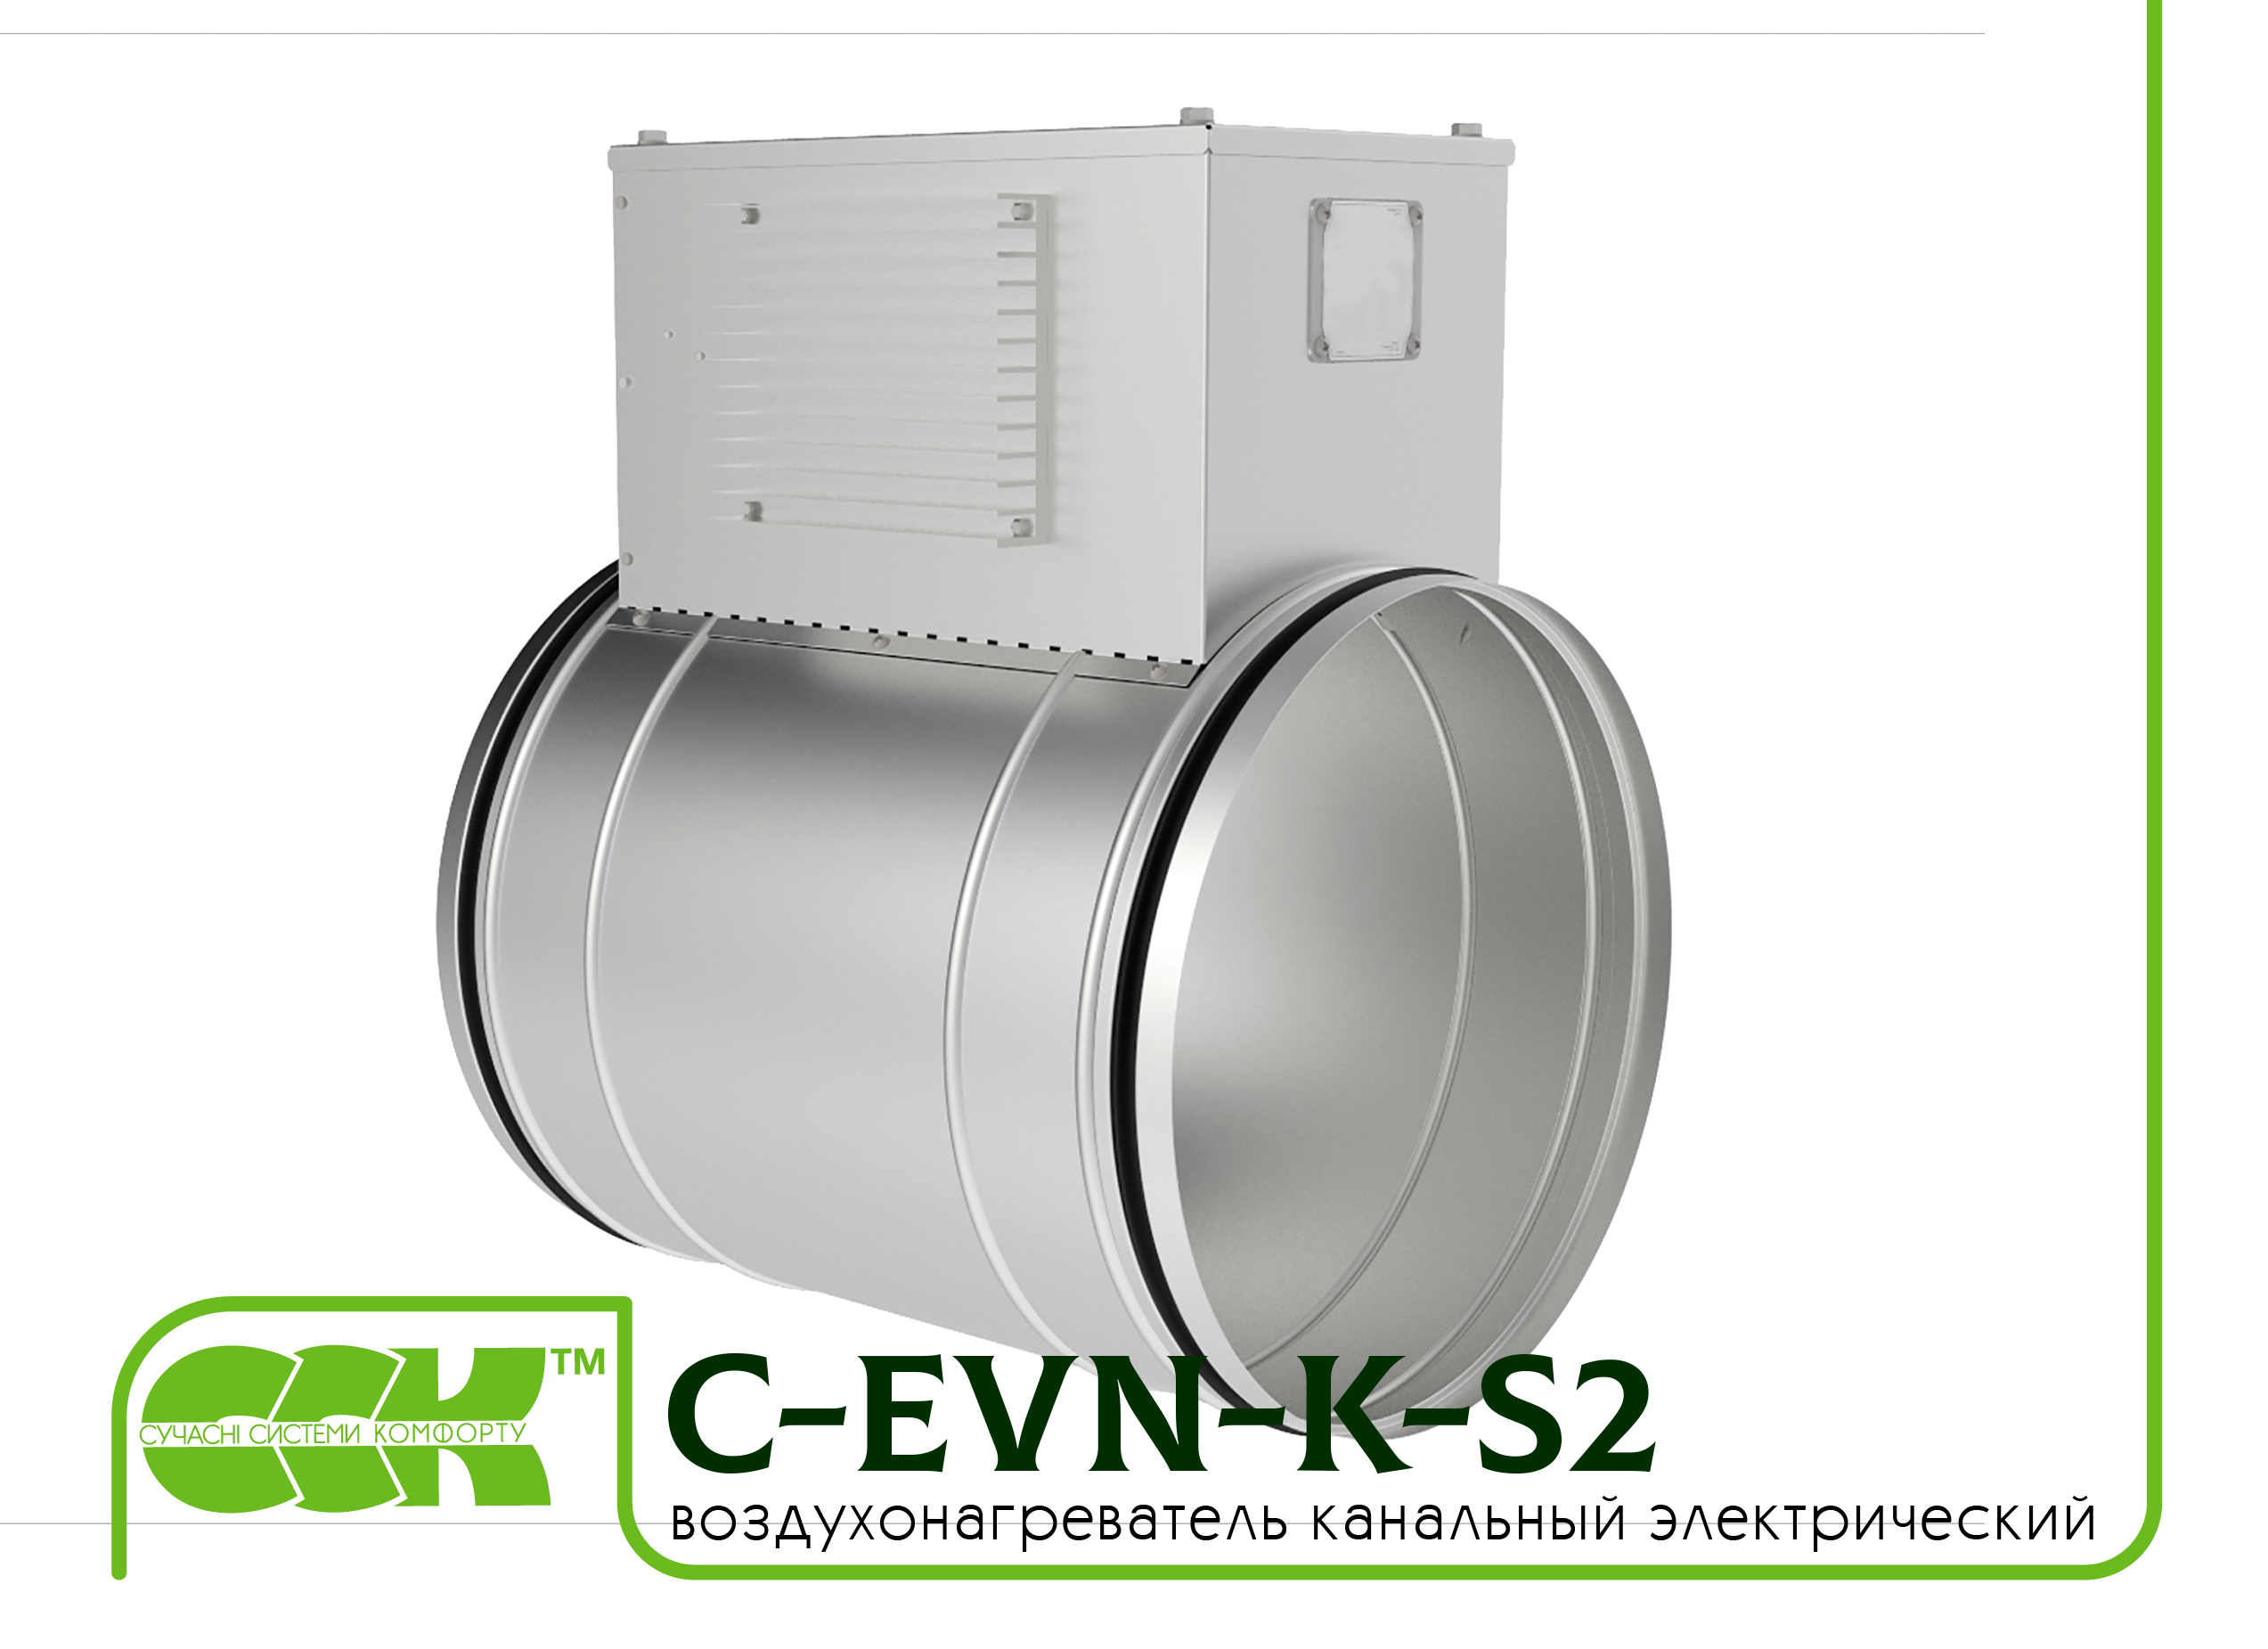 Воздухонагреватель канальный электрический для круглых каналов C-EVN-K-S2-315-12,0